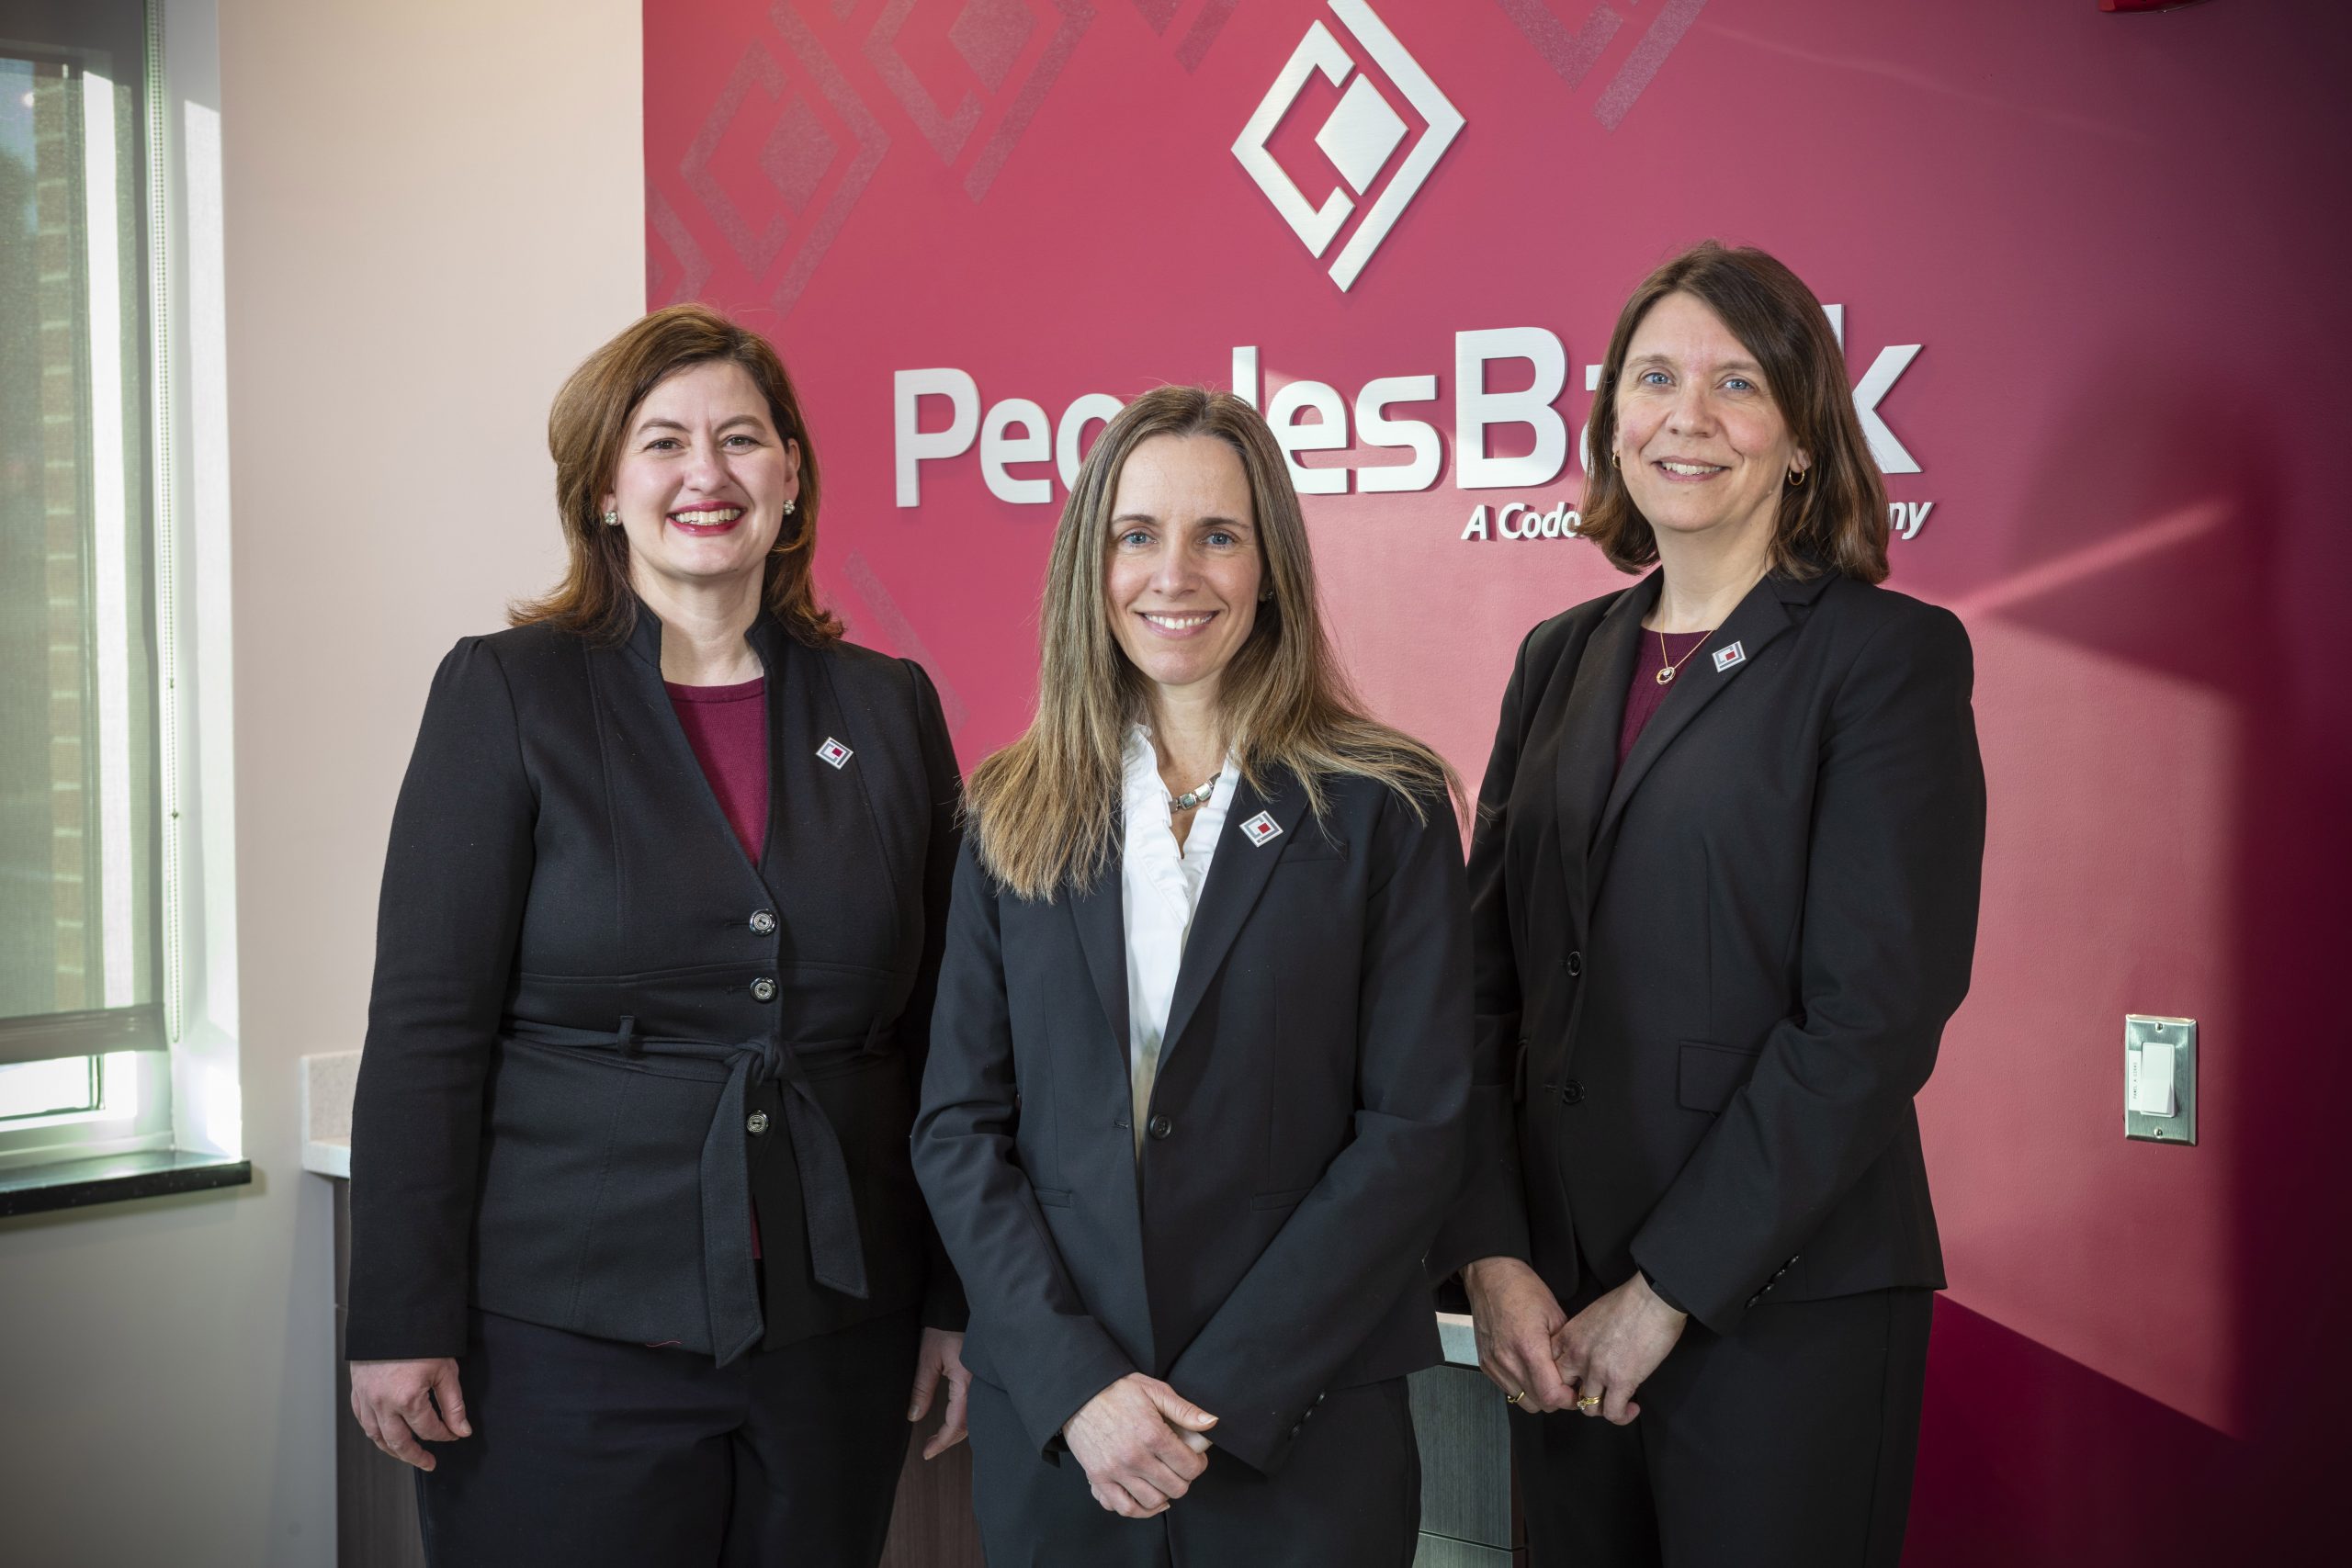 group photo of female executives